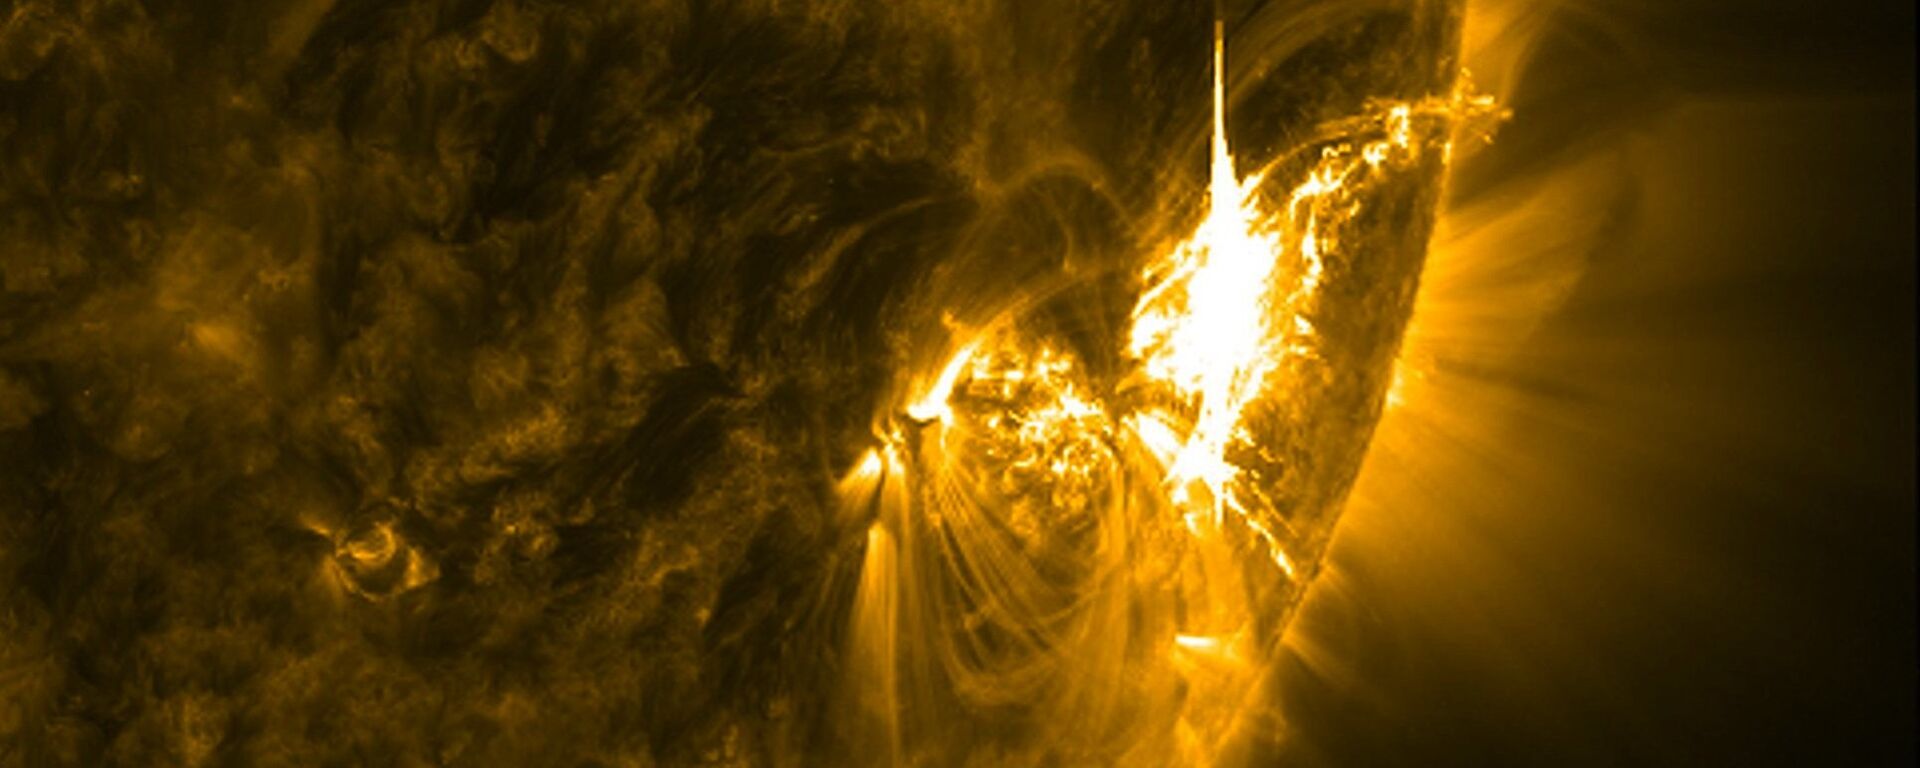 გეომაგნიტური ქარიშხალი მზეზე - Sputnik საქართველო, 1920, 24.04.2018